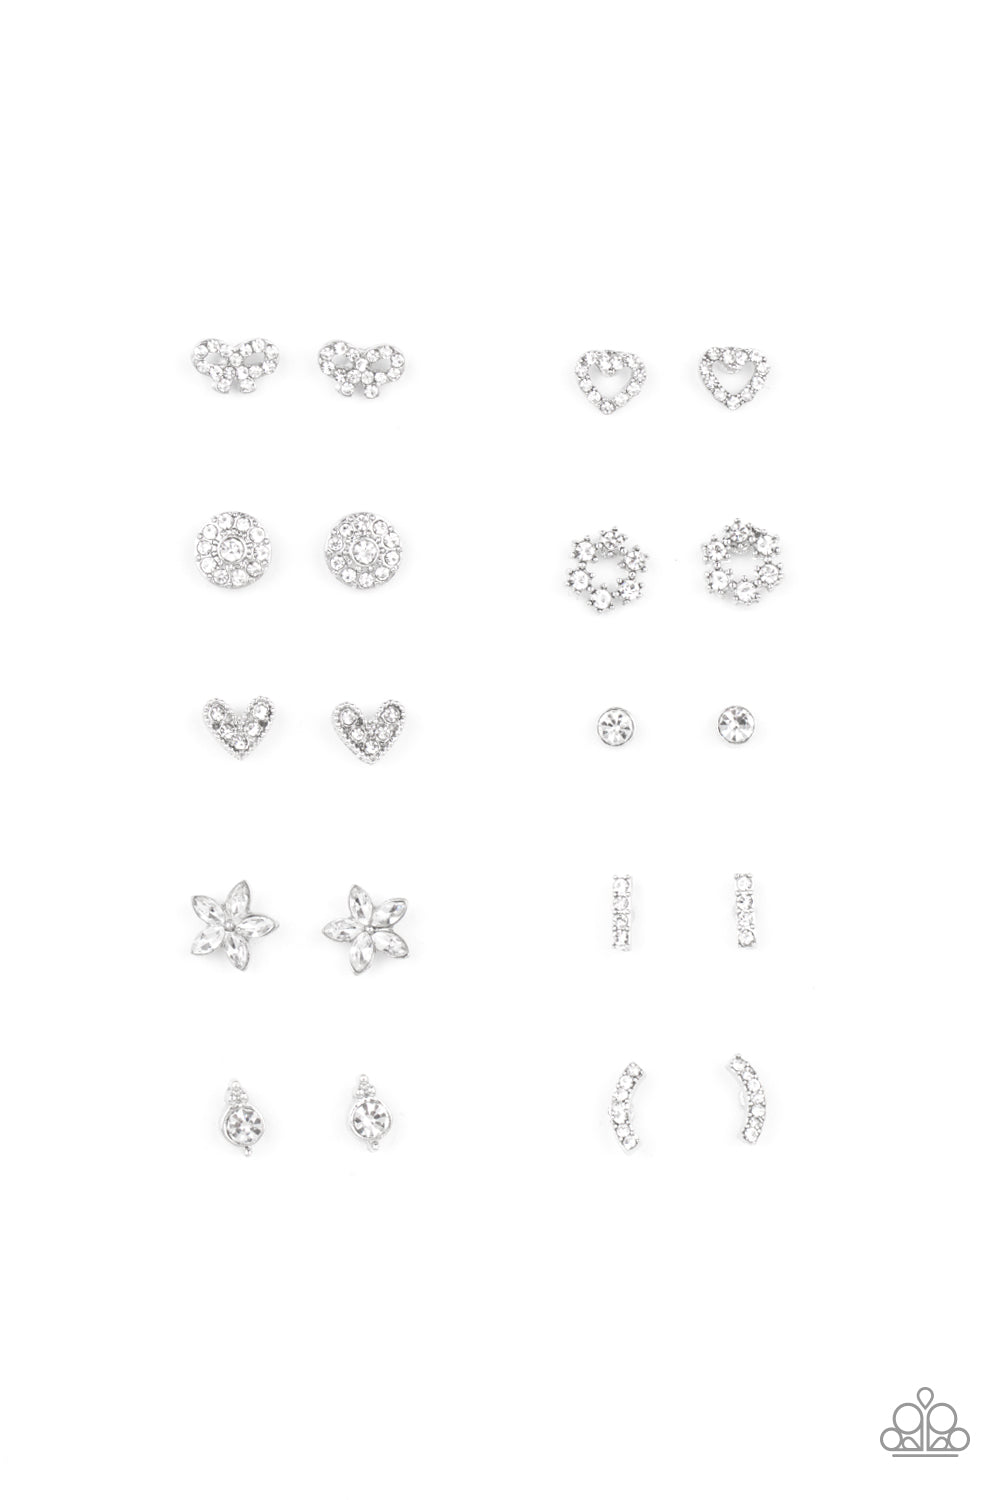 starlet-shimmer-earring-kit-8217-p5ss-mtxx-341xx